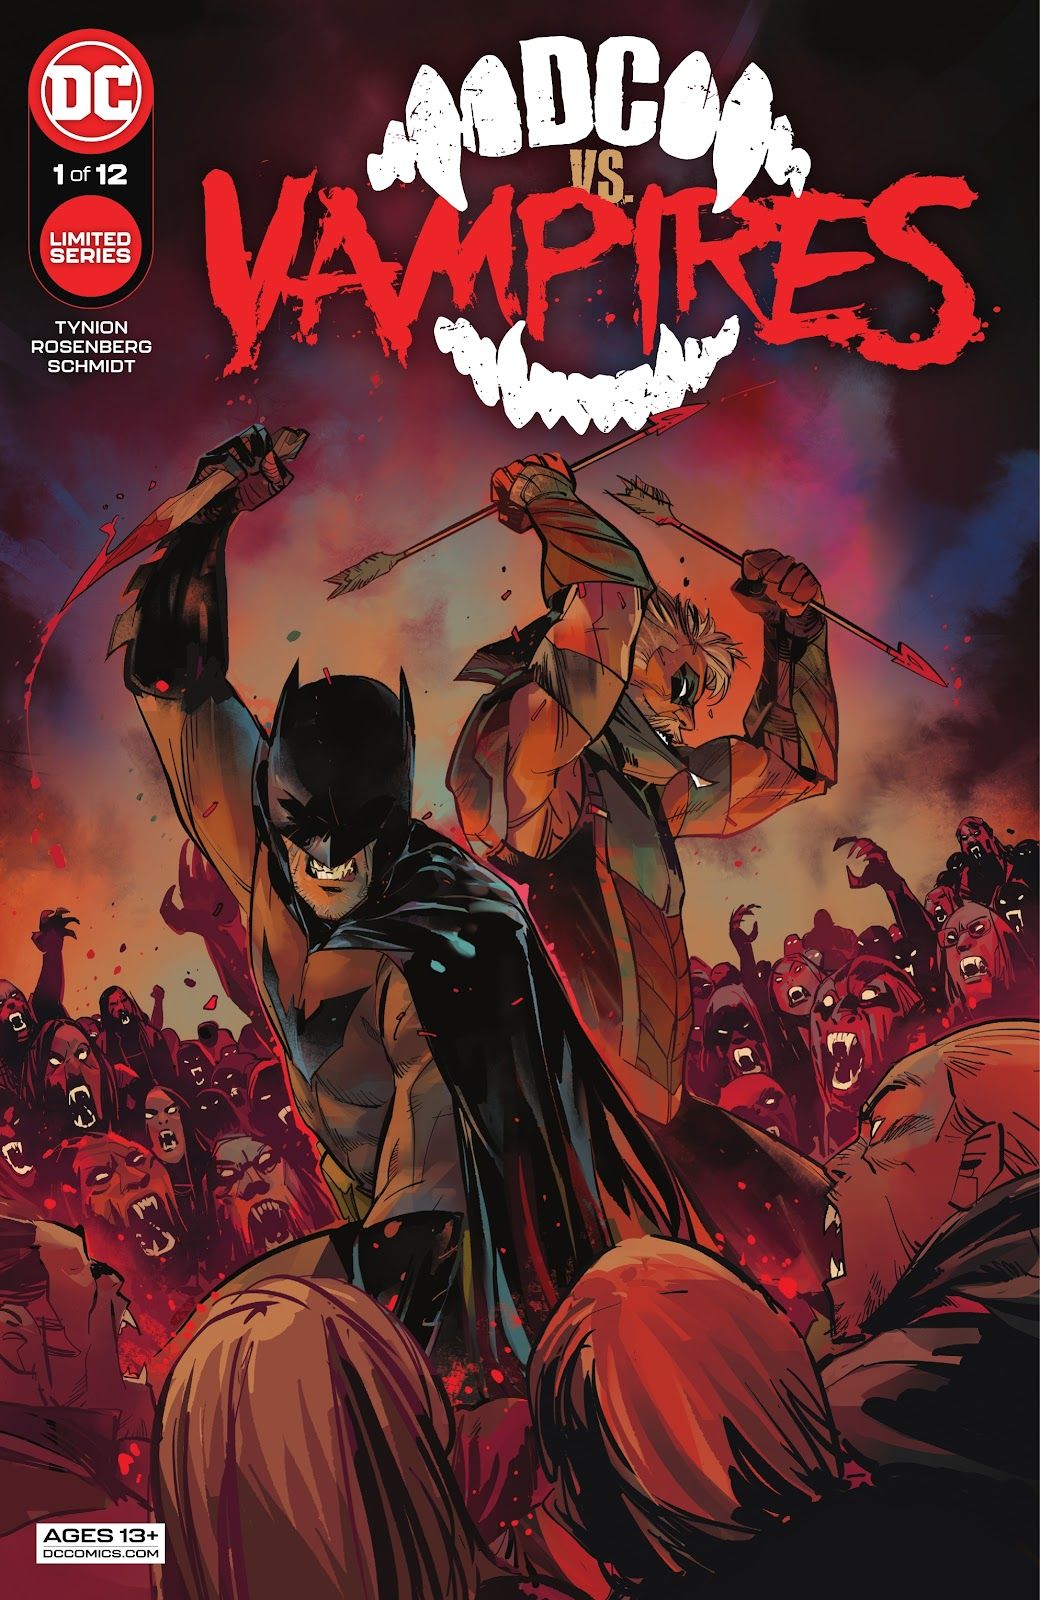 Cover of DC vs Vampires #1